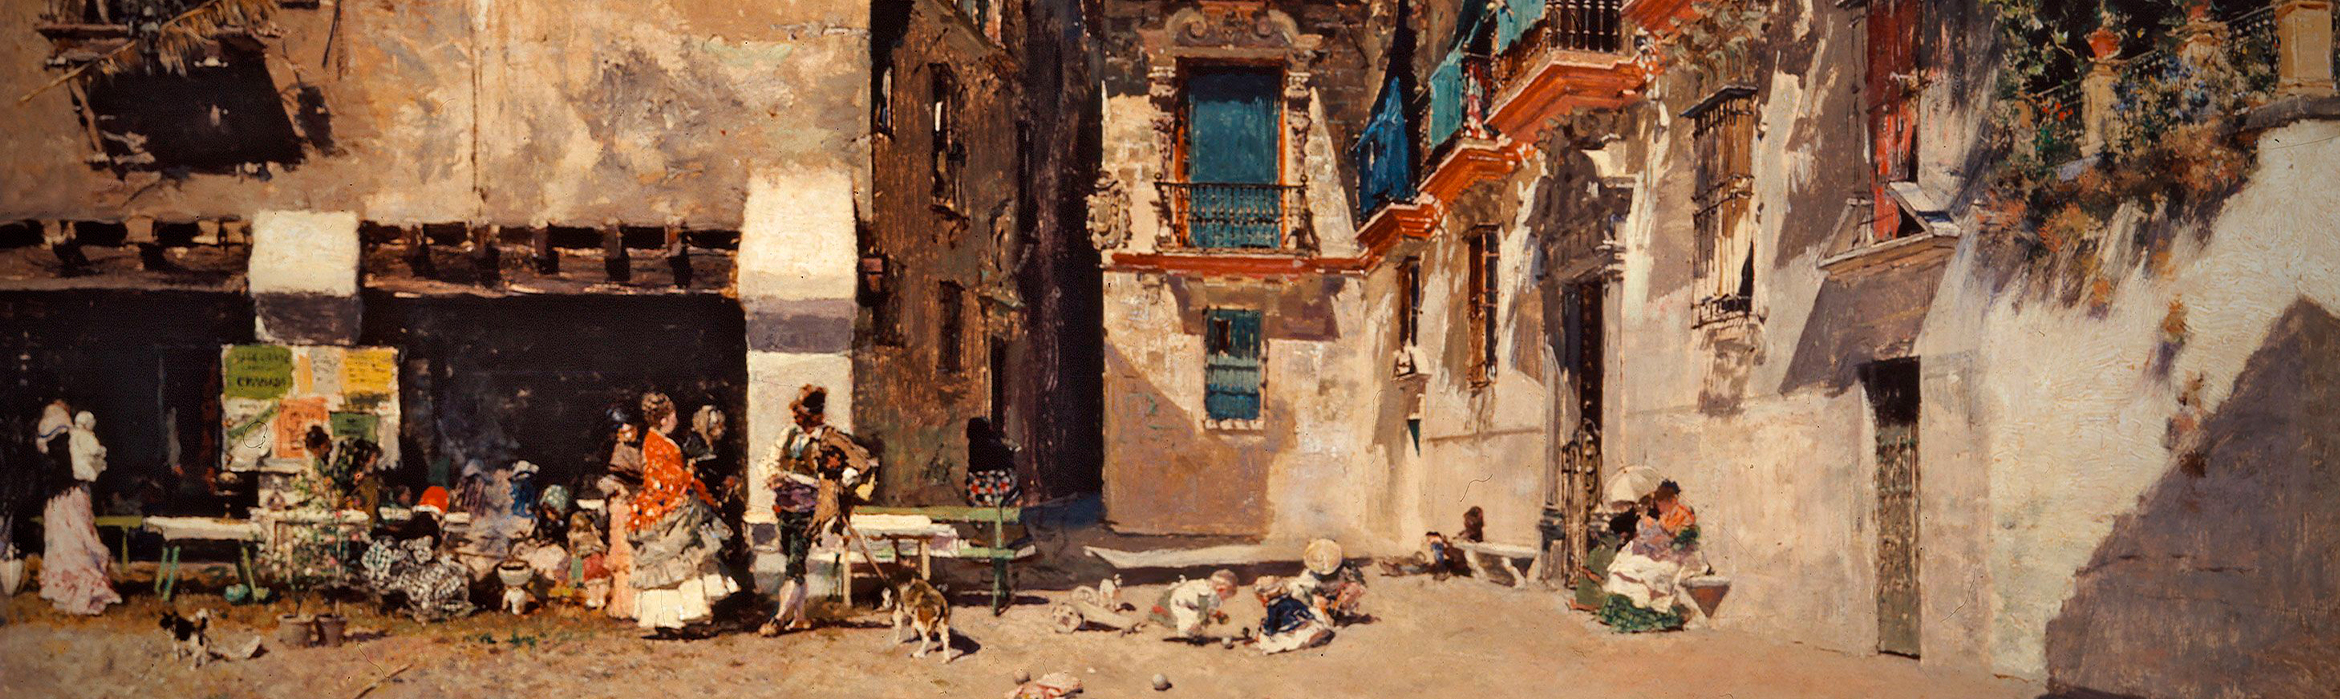 Cuadro del pintor Mariano Fortuny, "Ayuntamiento viejo de Granada", con una escena costumbrista del ambiente de la calle